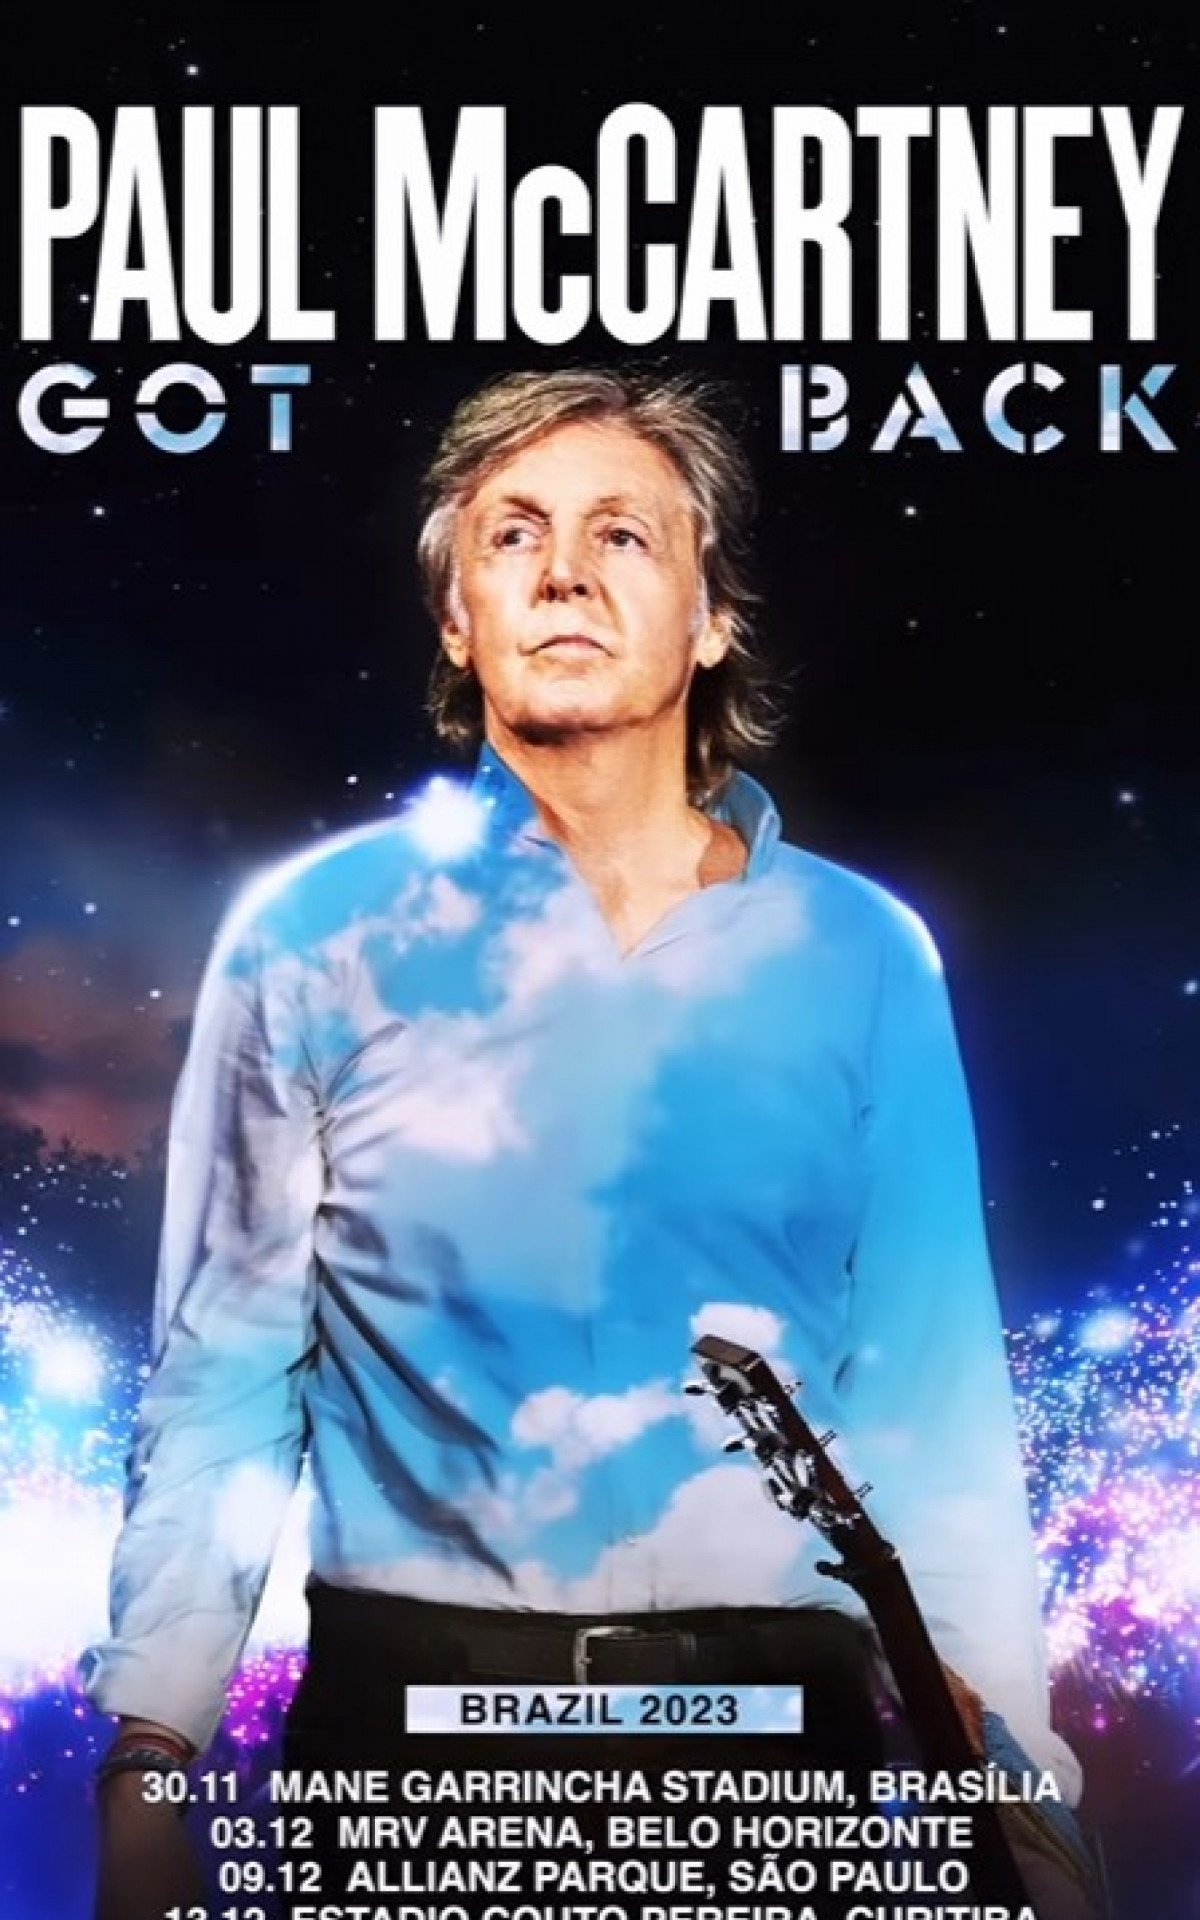 Paul McCartney mostra vigor durante show no RJ - 16/12/2023 - Ilustrada -  Folha